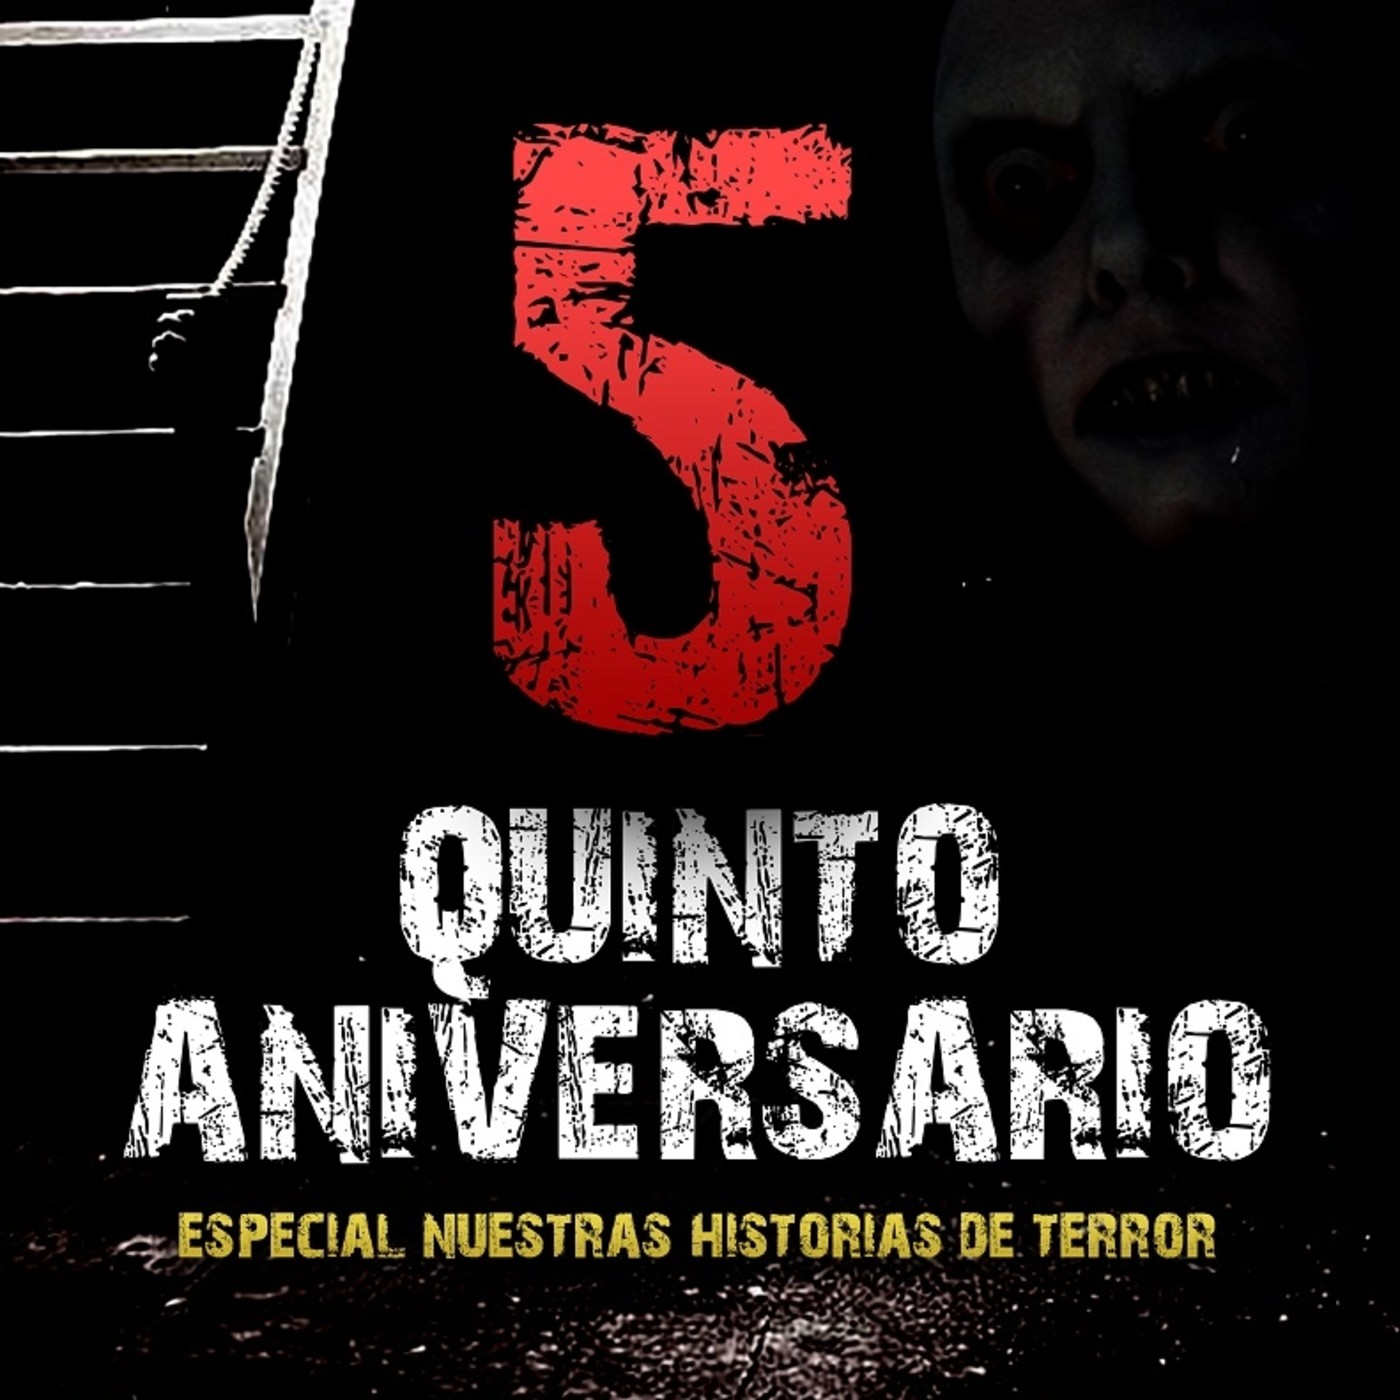 Especial V Aniversario: "Noche de terror y vivencias personales"